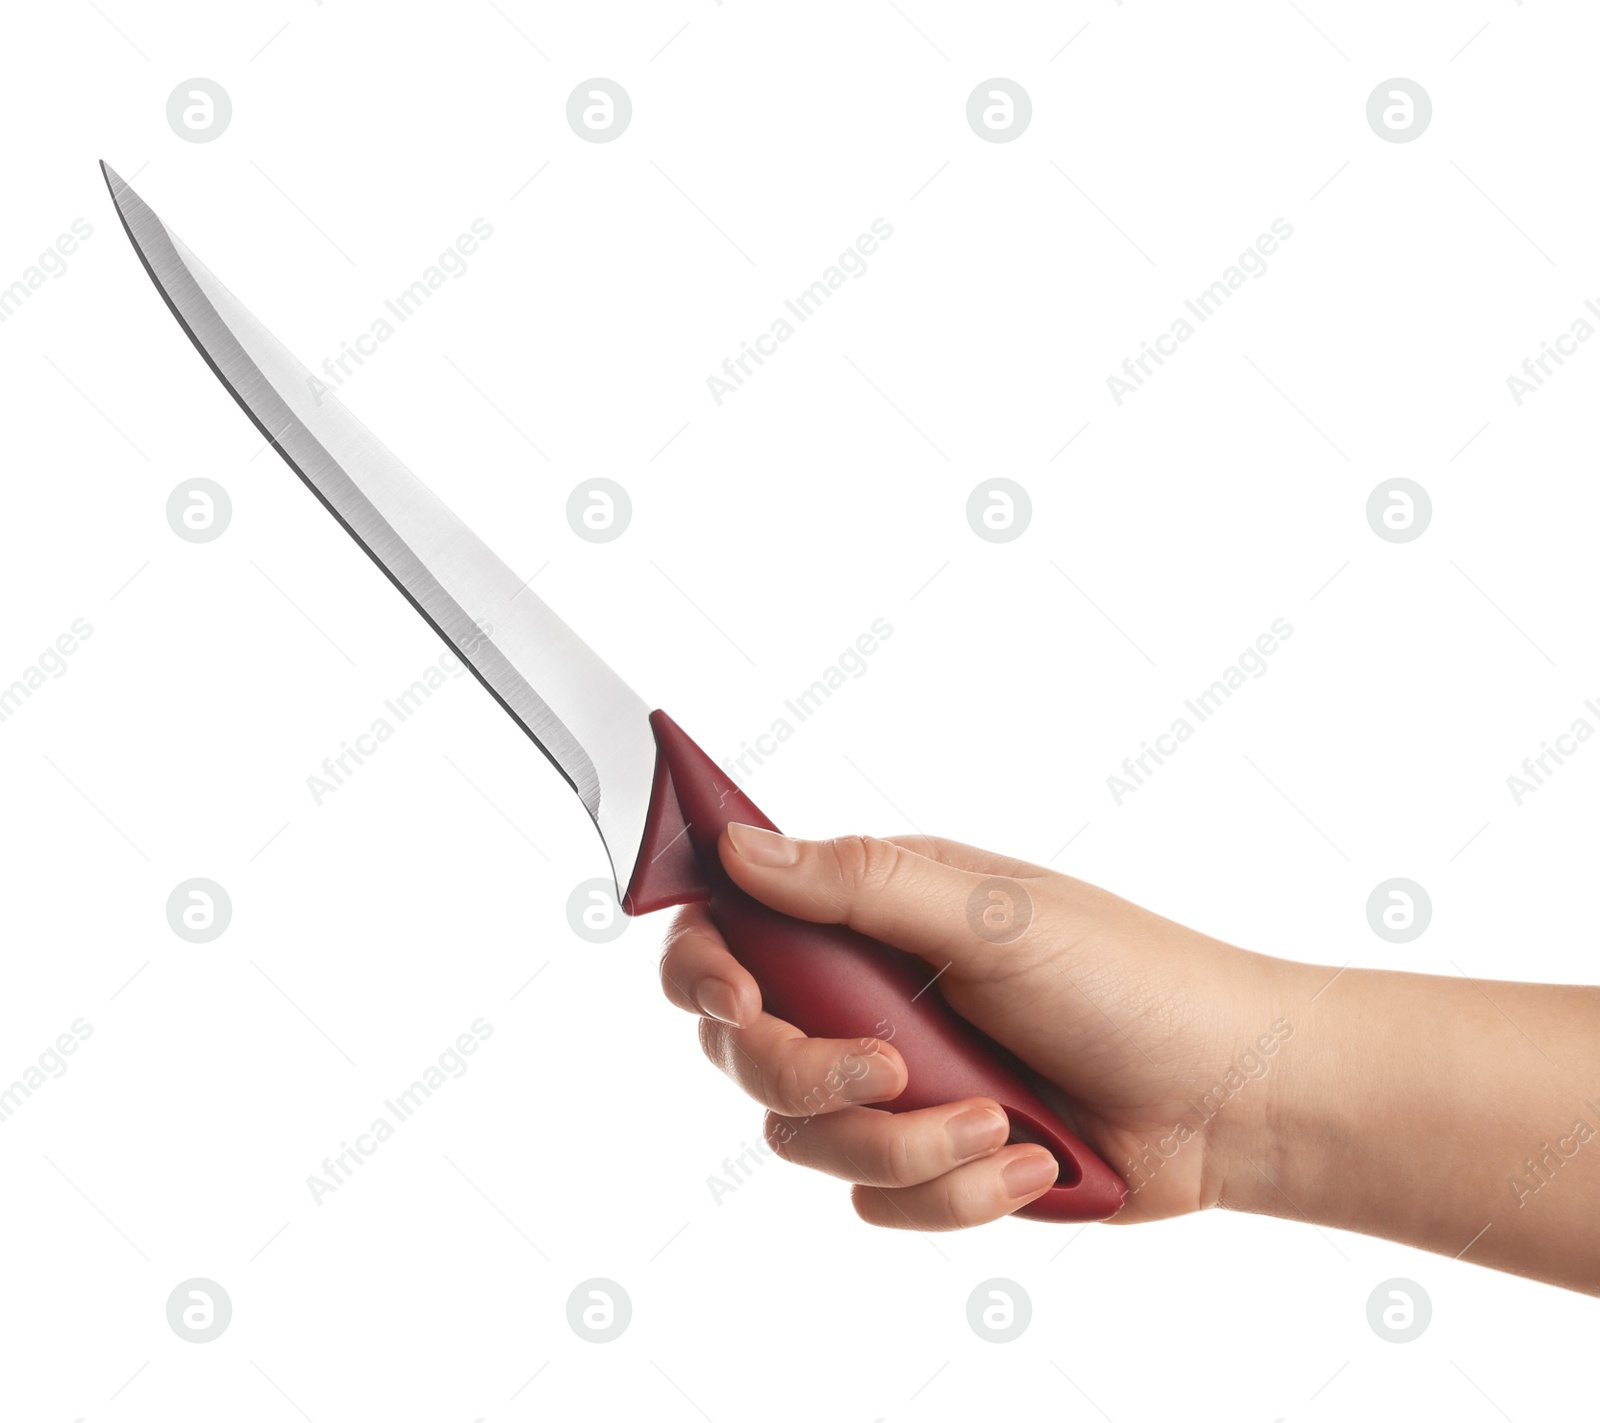 Photo of Woman holding boning knife on white background, closeup